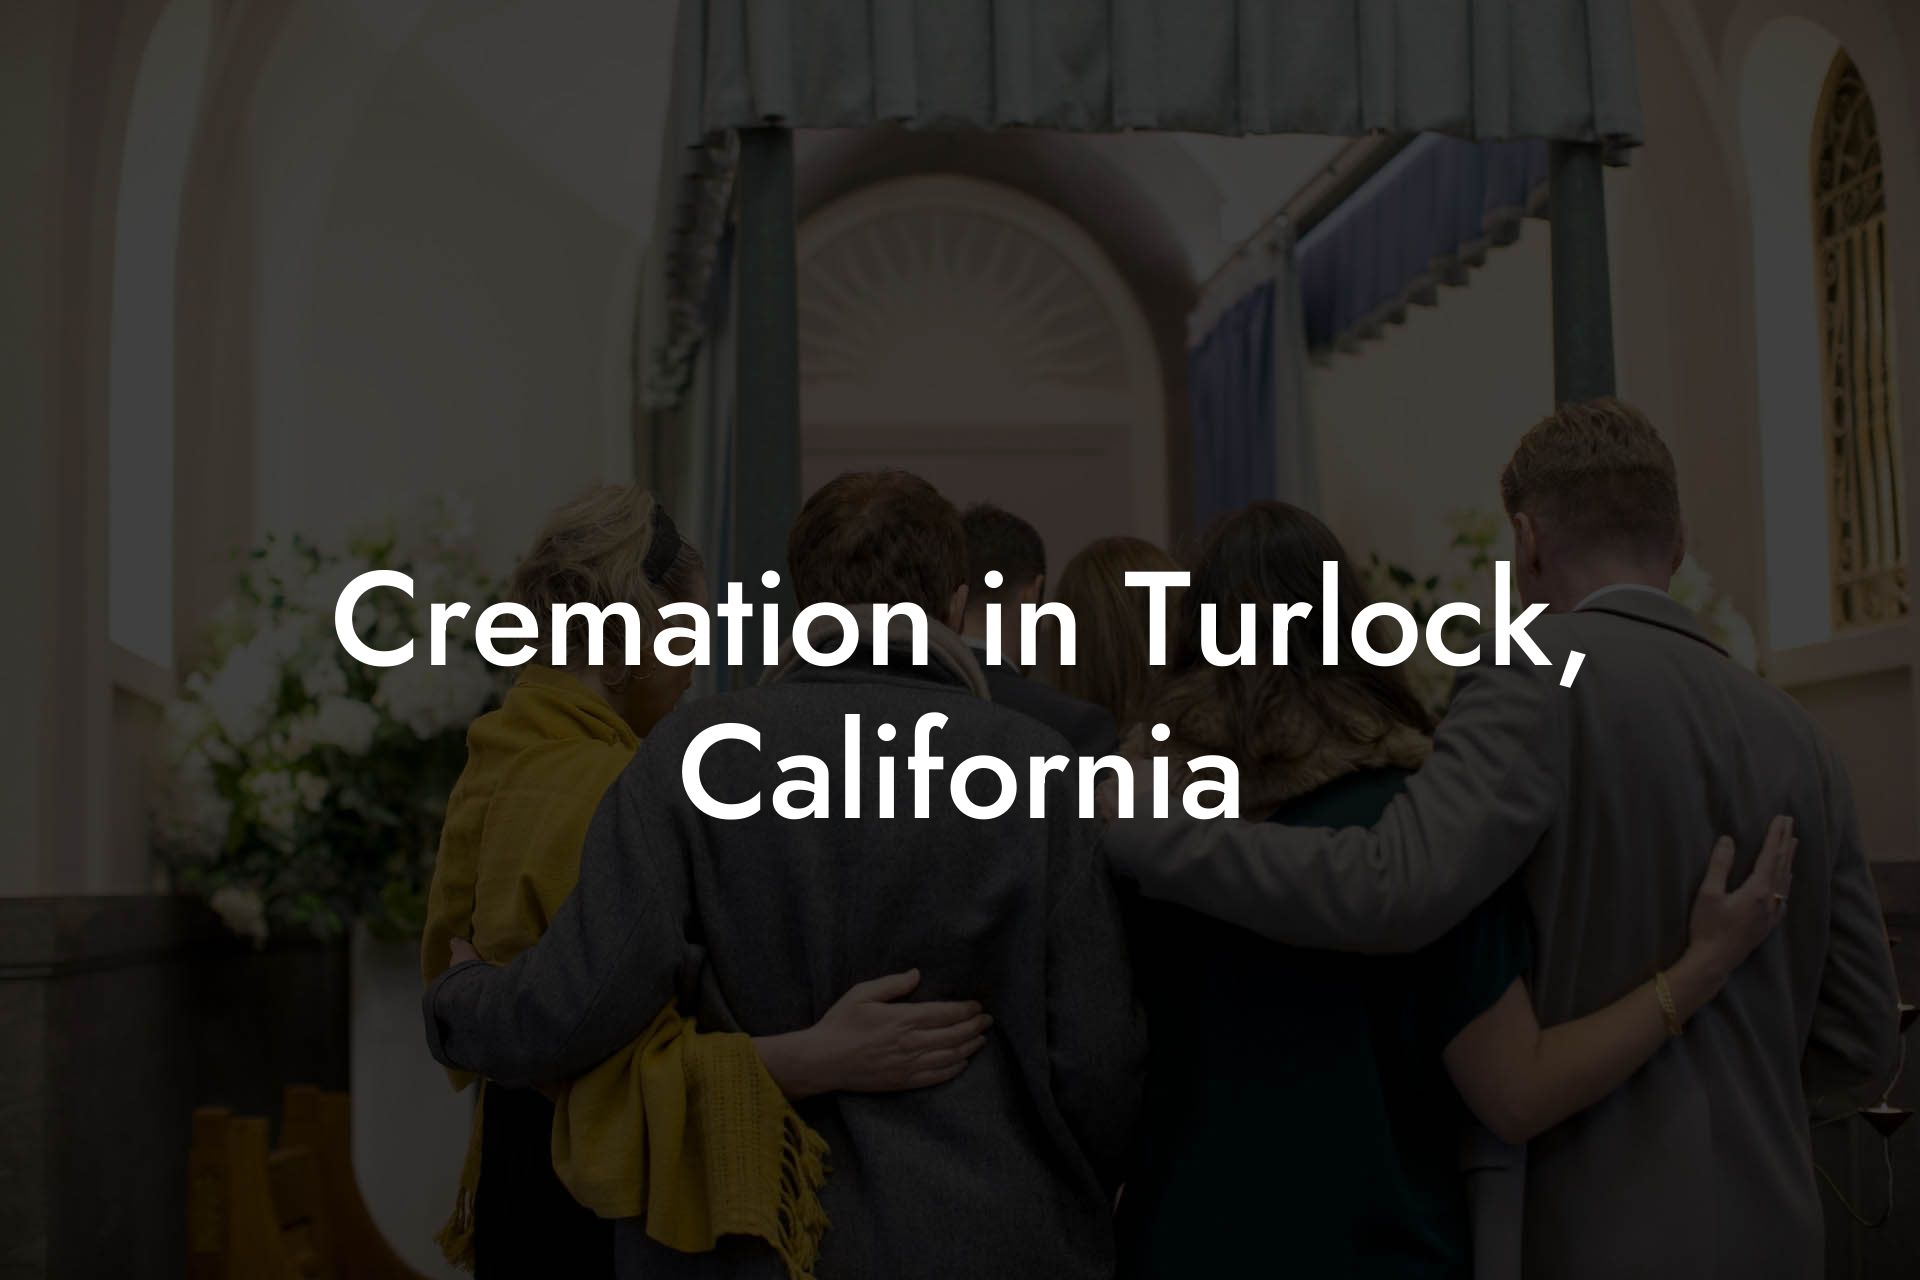 Cremation in Turlock, California